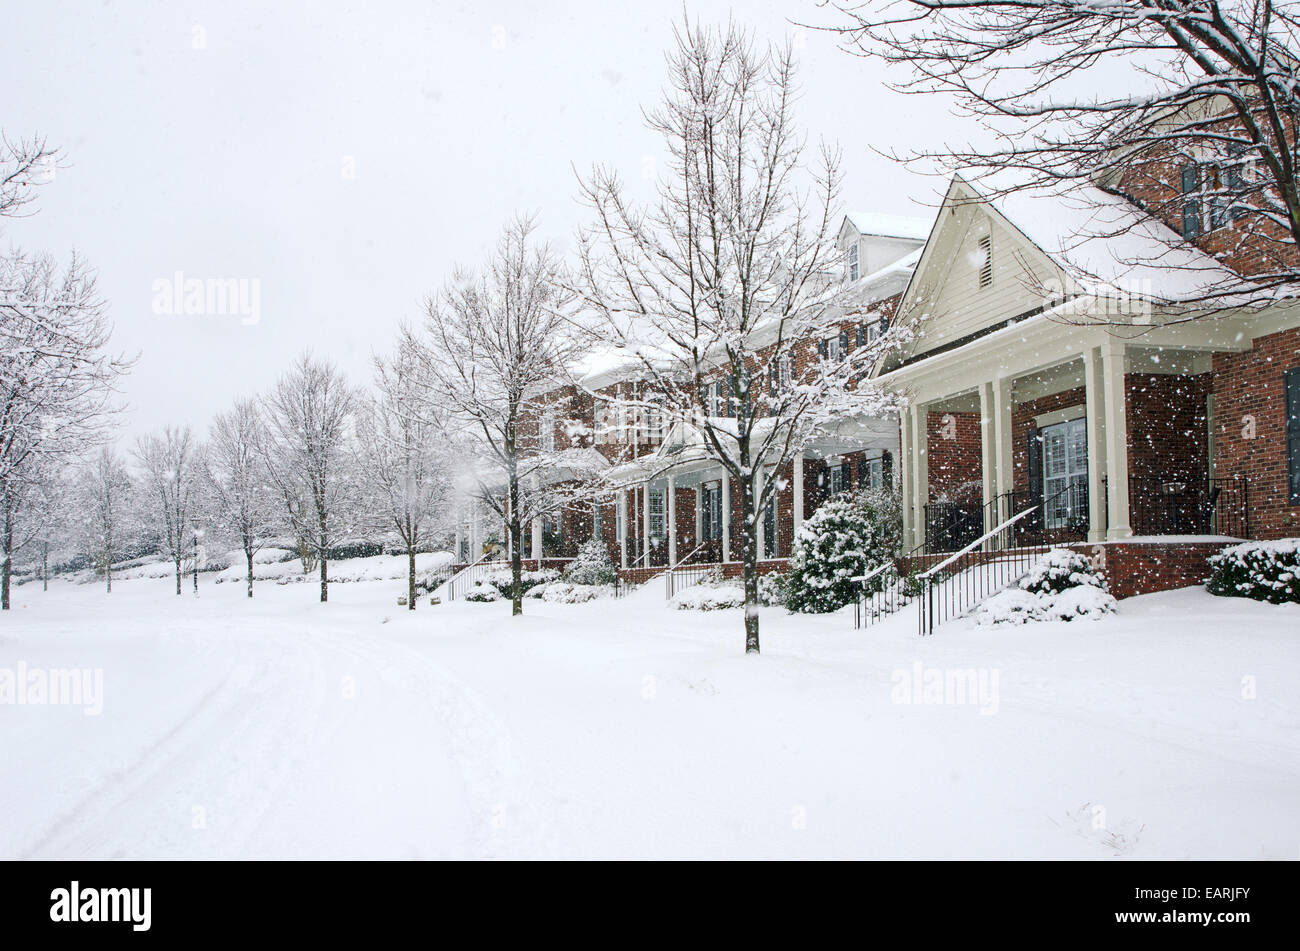 Tradizionale casa di mattoni sono catturati durante una tempesta di neve in questa bellissima scena d'inverno. Foto Stock